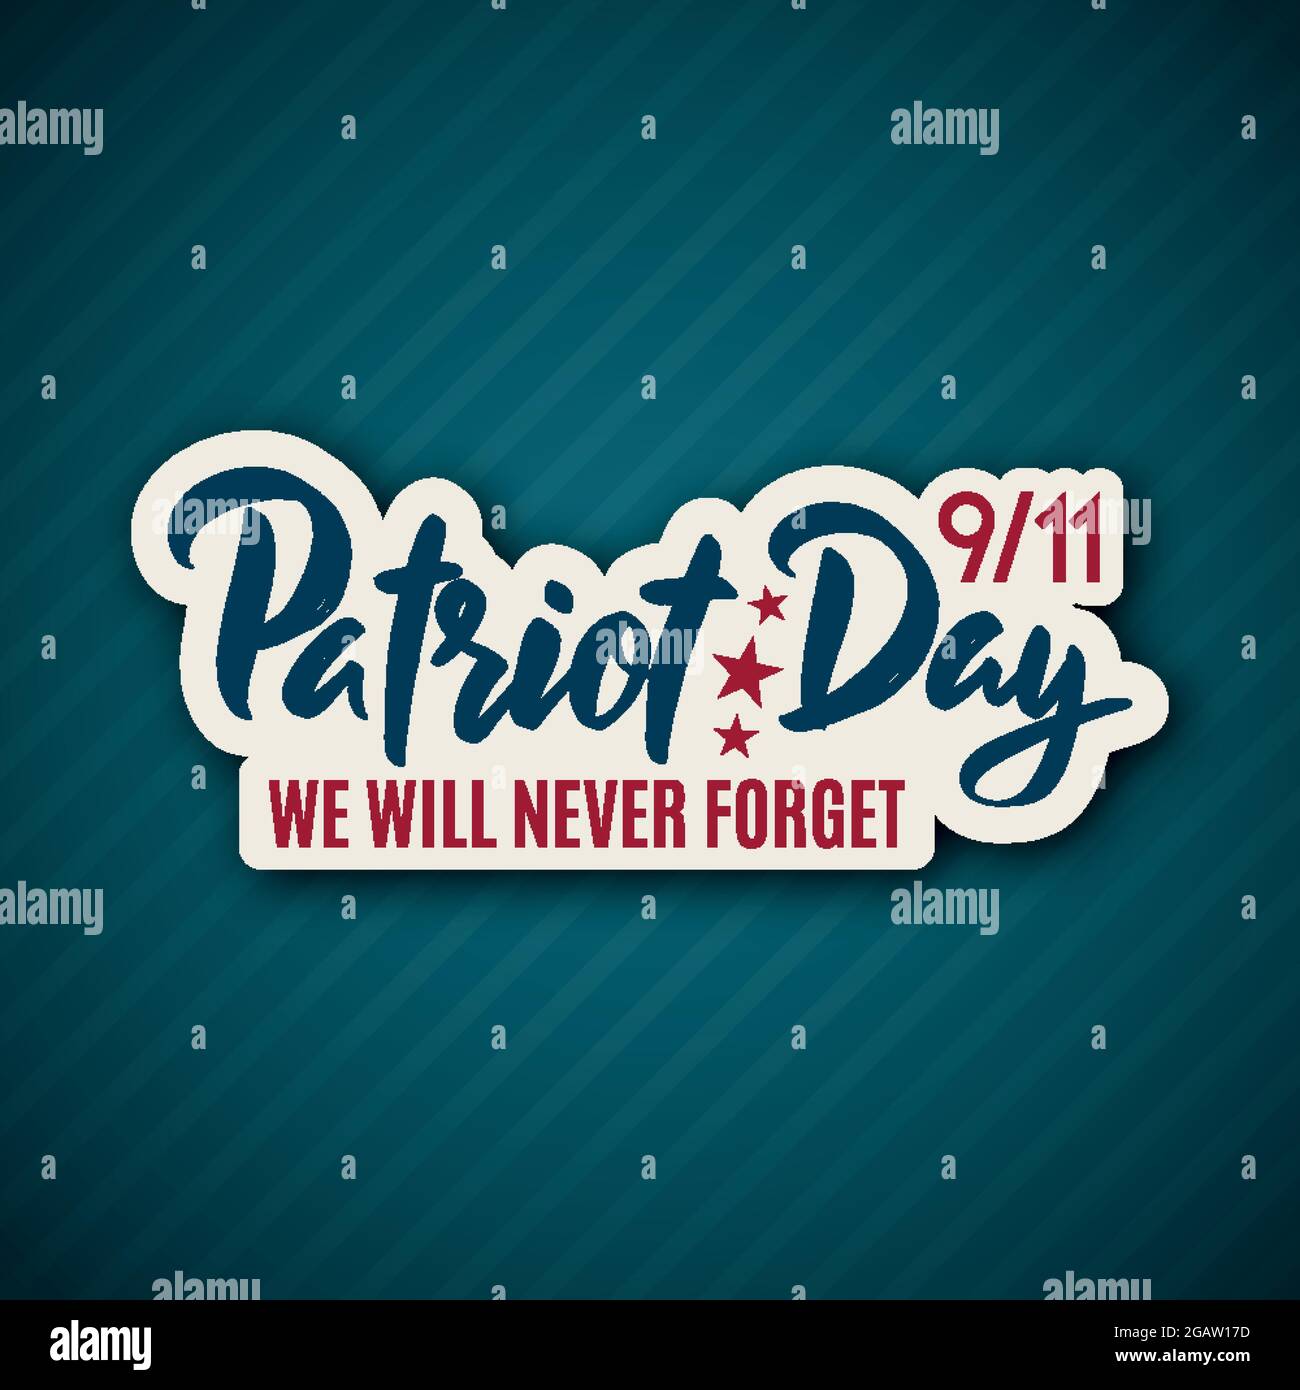 9/11 Patriot Day Aufkleber mit Schriftzug. 11. September 2001. Wir werden es nie vergessen. Designvorlage. Vektorgrafik. Stock Vektor